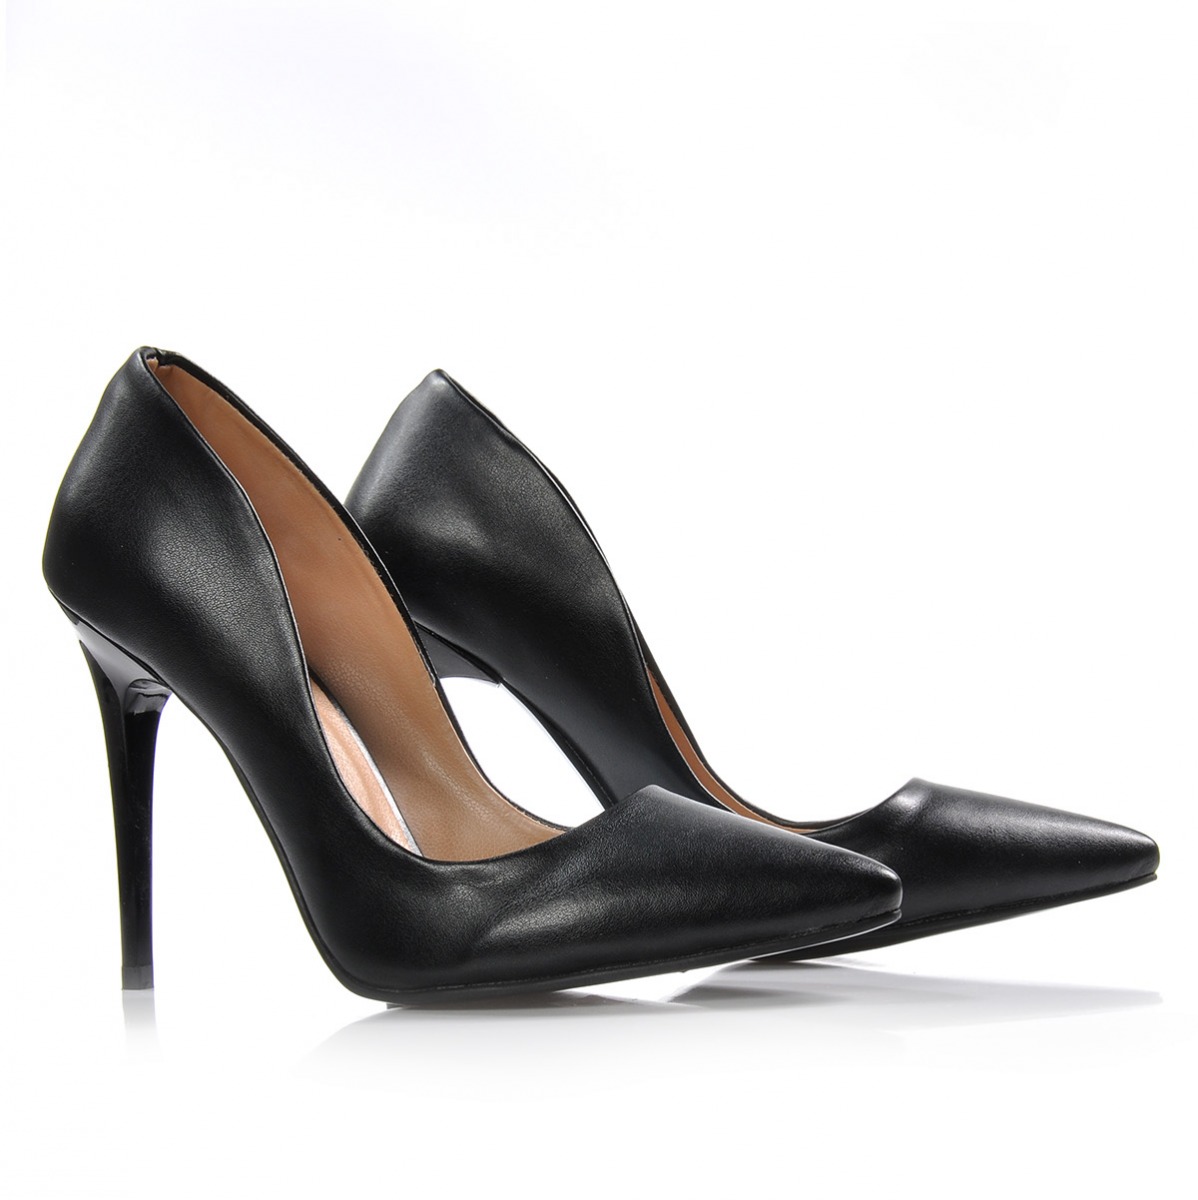 Flo Kadın  Siyah Klasik Topuklu Ayakkabı VZN-332Y. 4